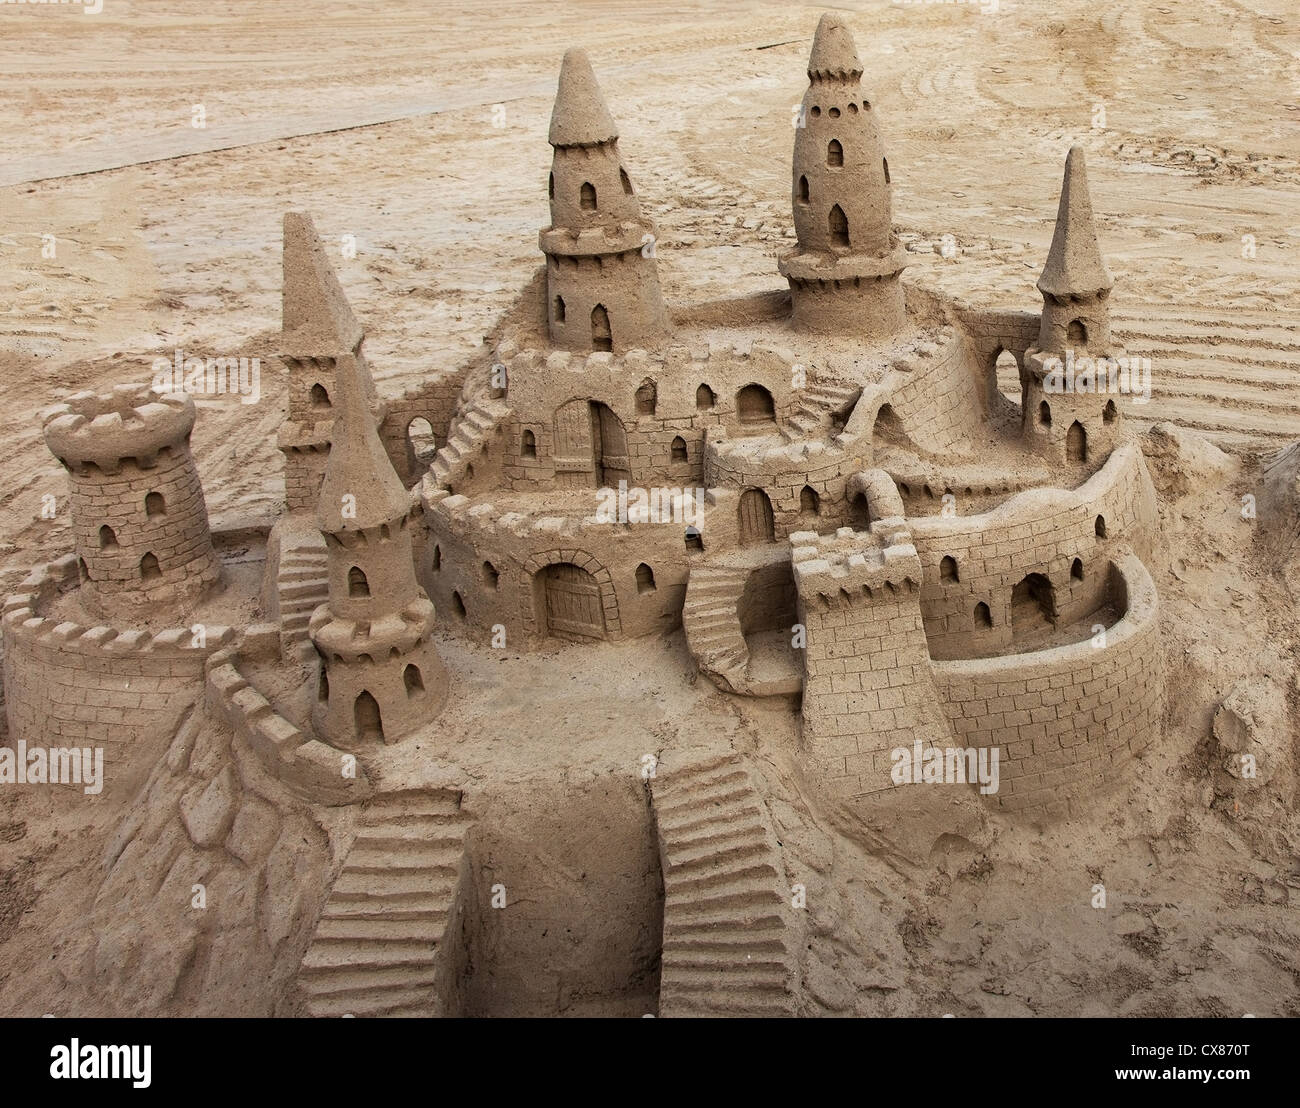 Un magnifique château de sable sur une plage. Banque D'Images